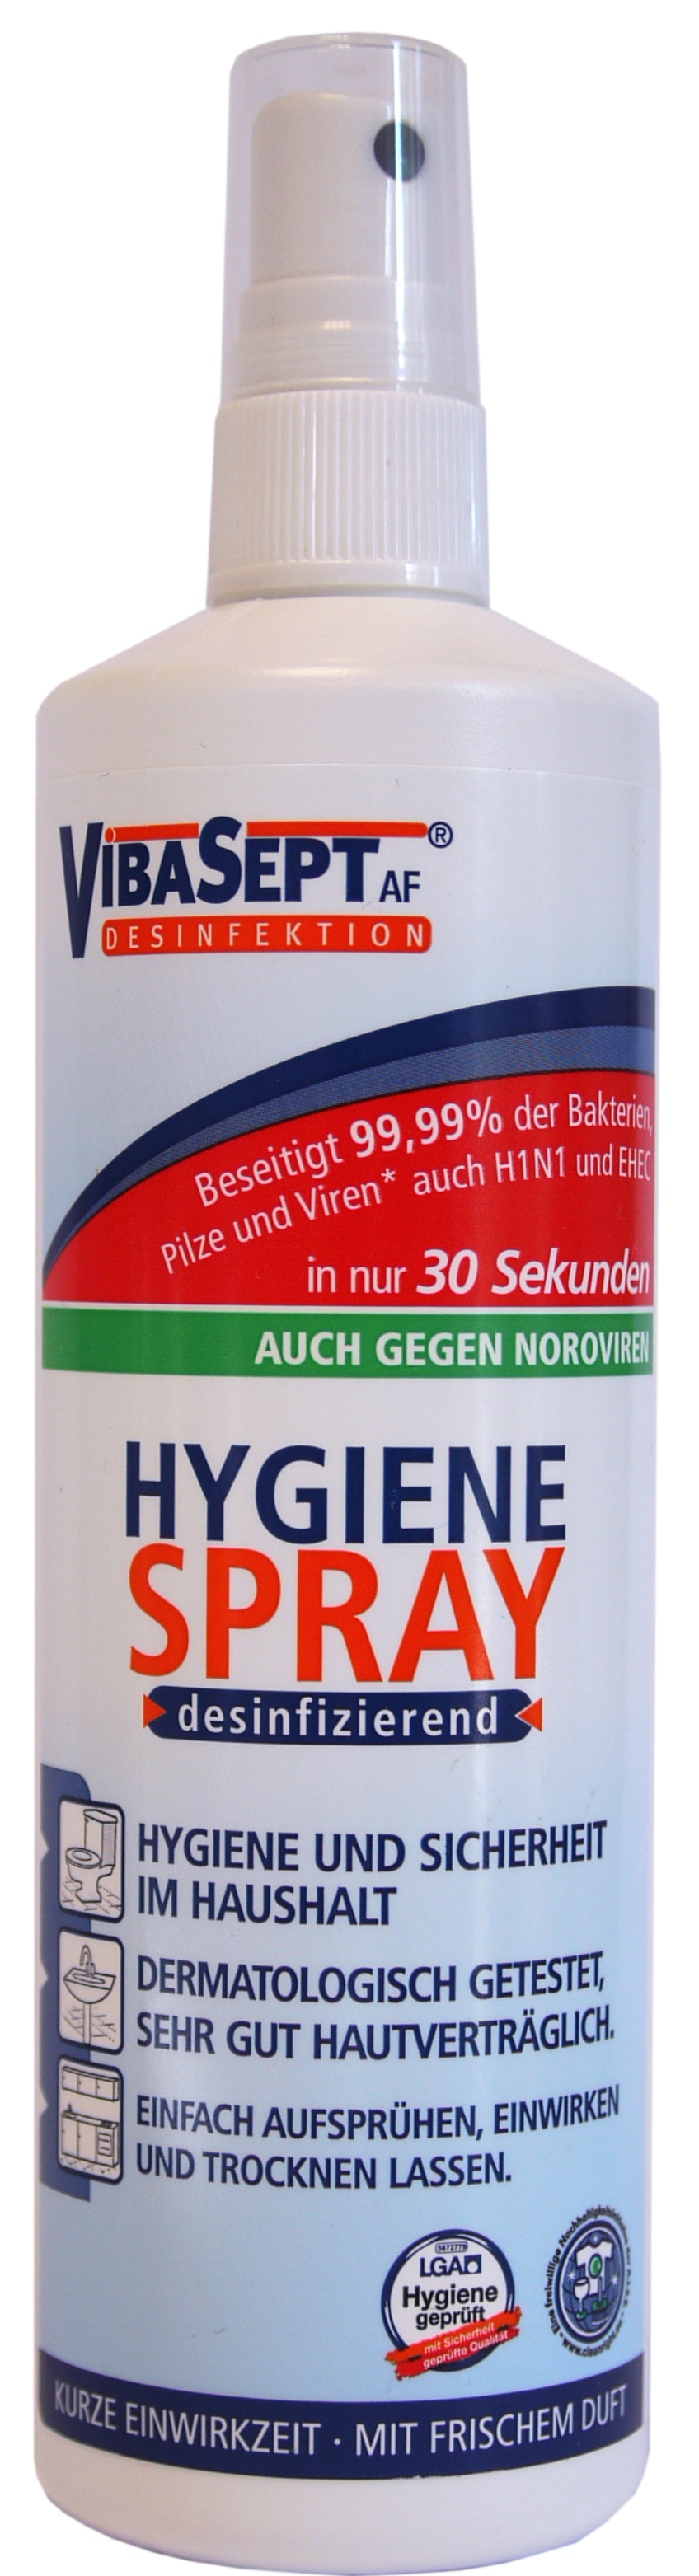 60064 - VibaSept Hygiene spray 250 ml